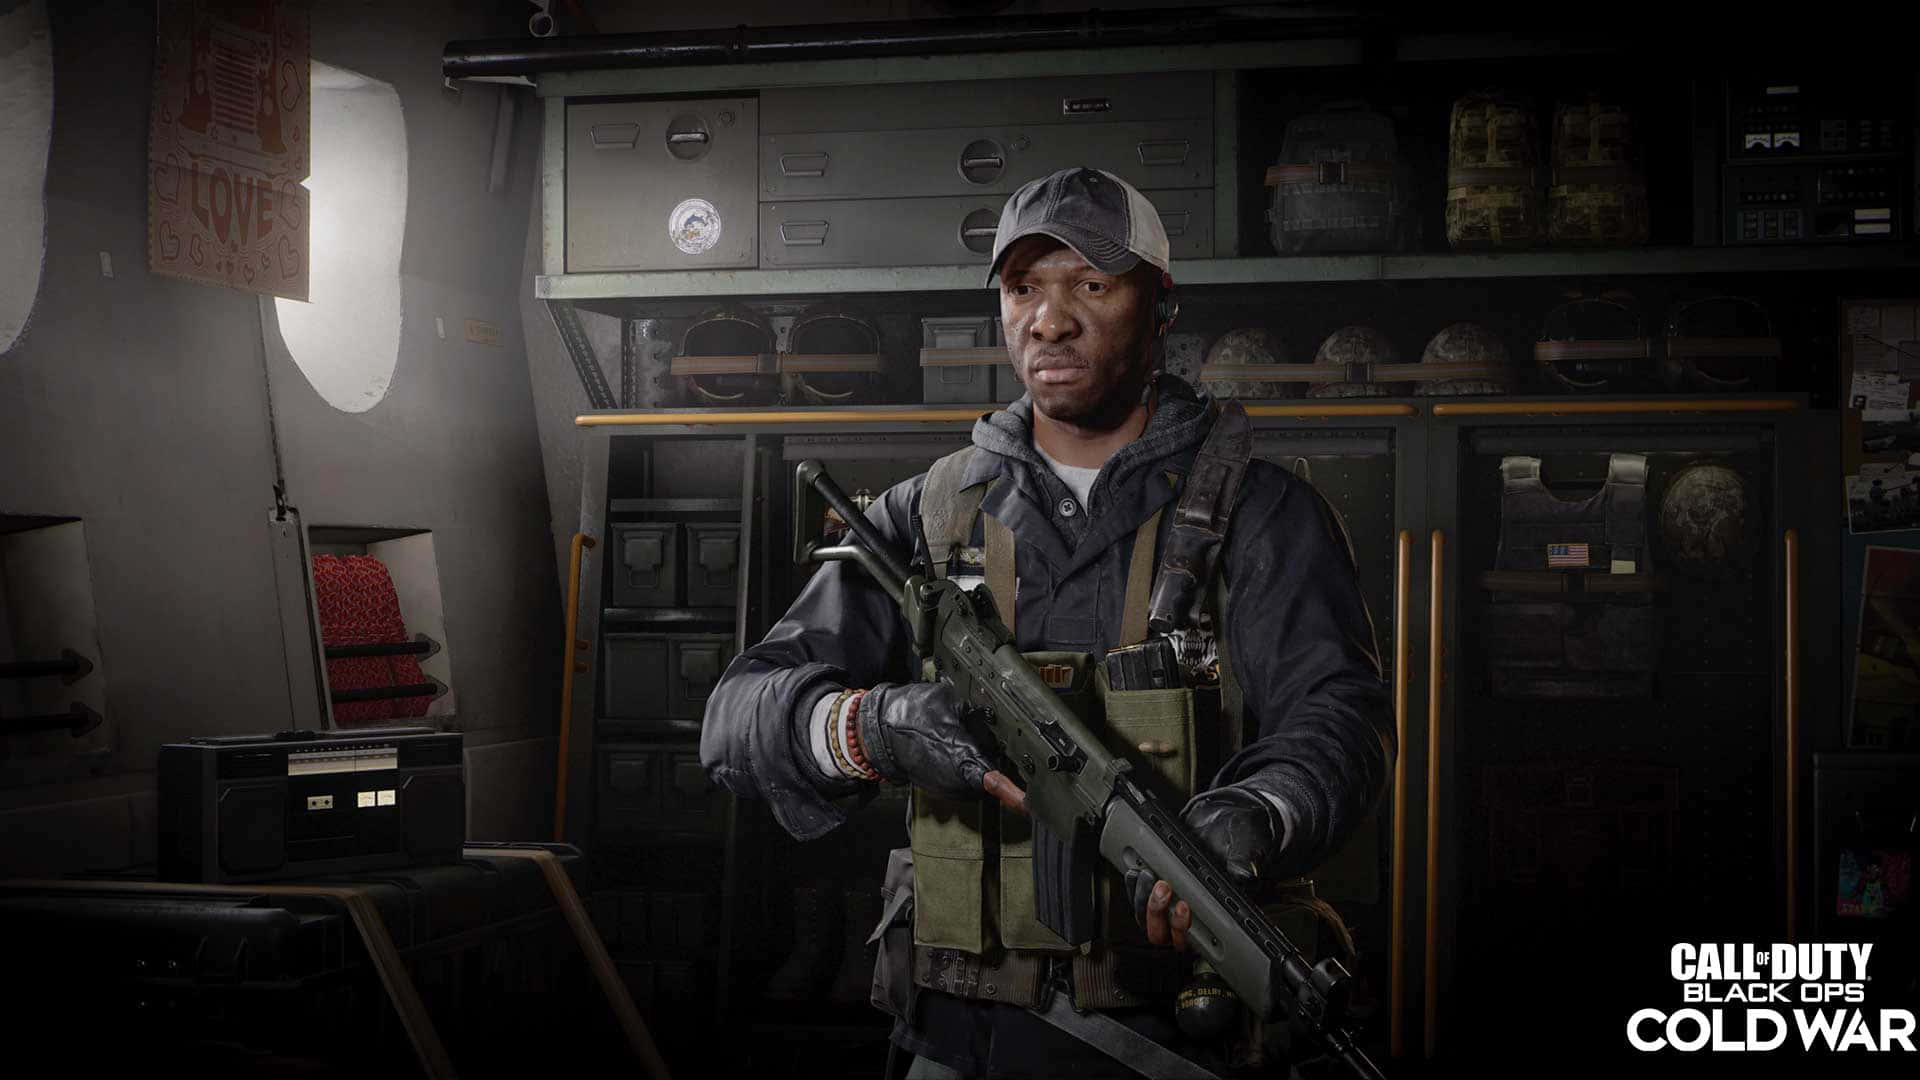 Utmanakalla Kriget I Den Senaste Delen Av Call Of Duty: Black Ops Cold War.